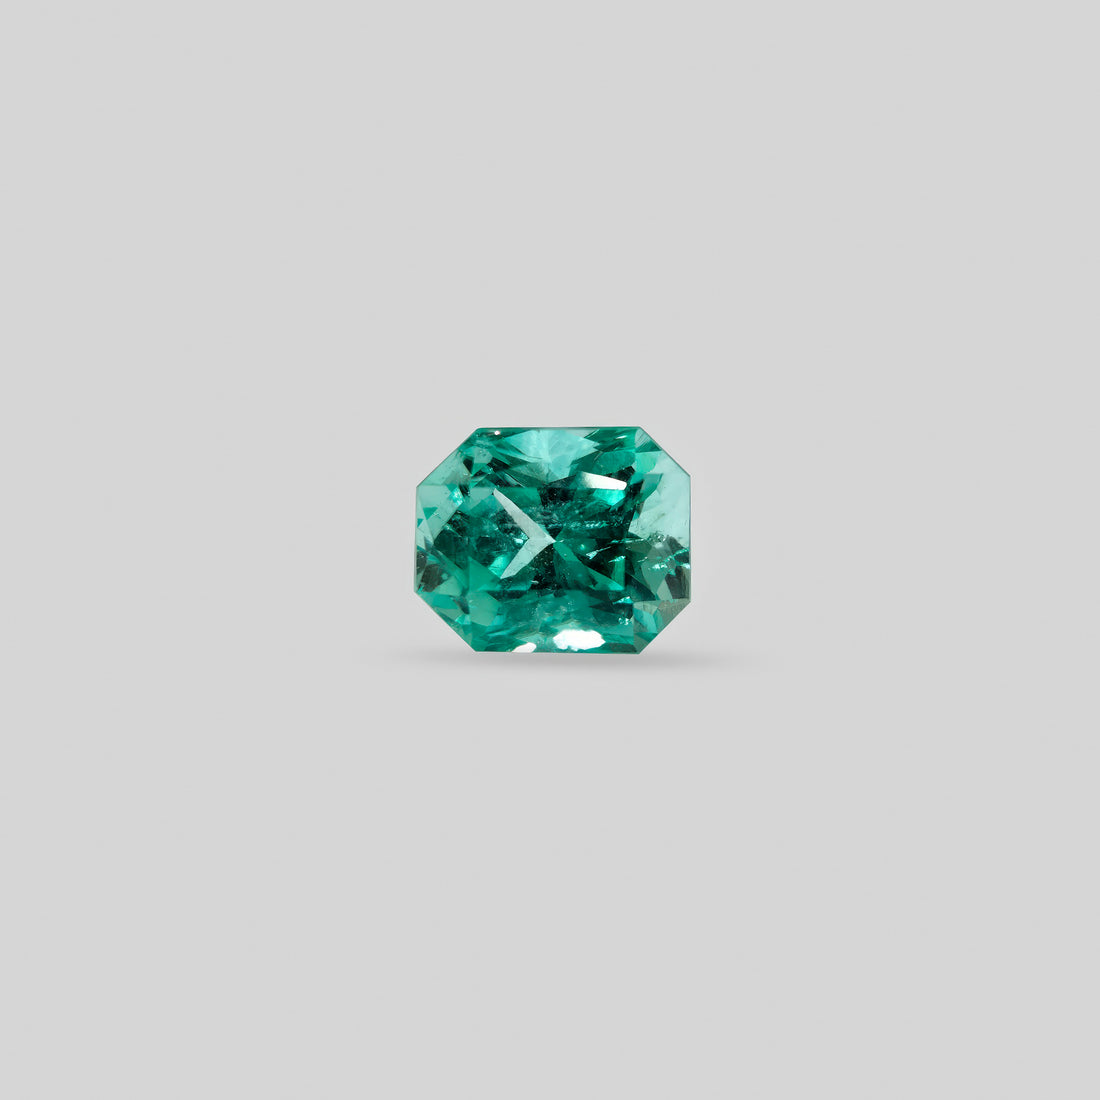 Emerald - 9.66 carats